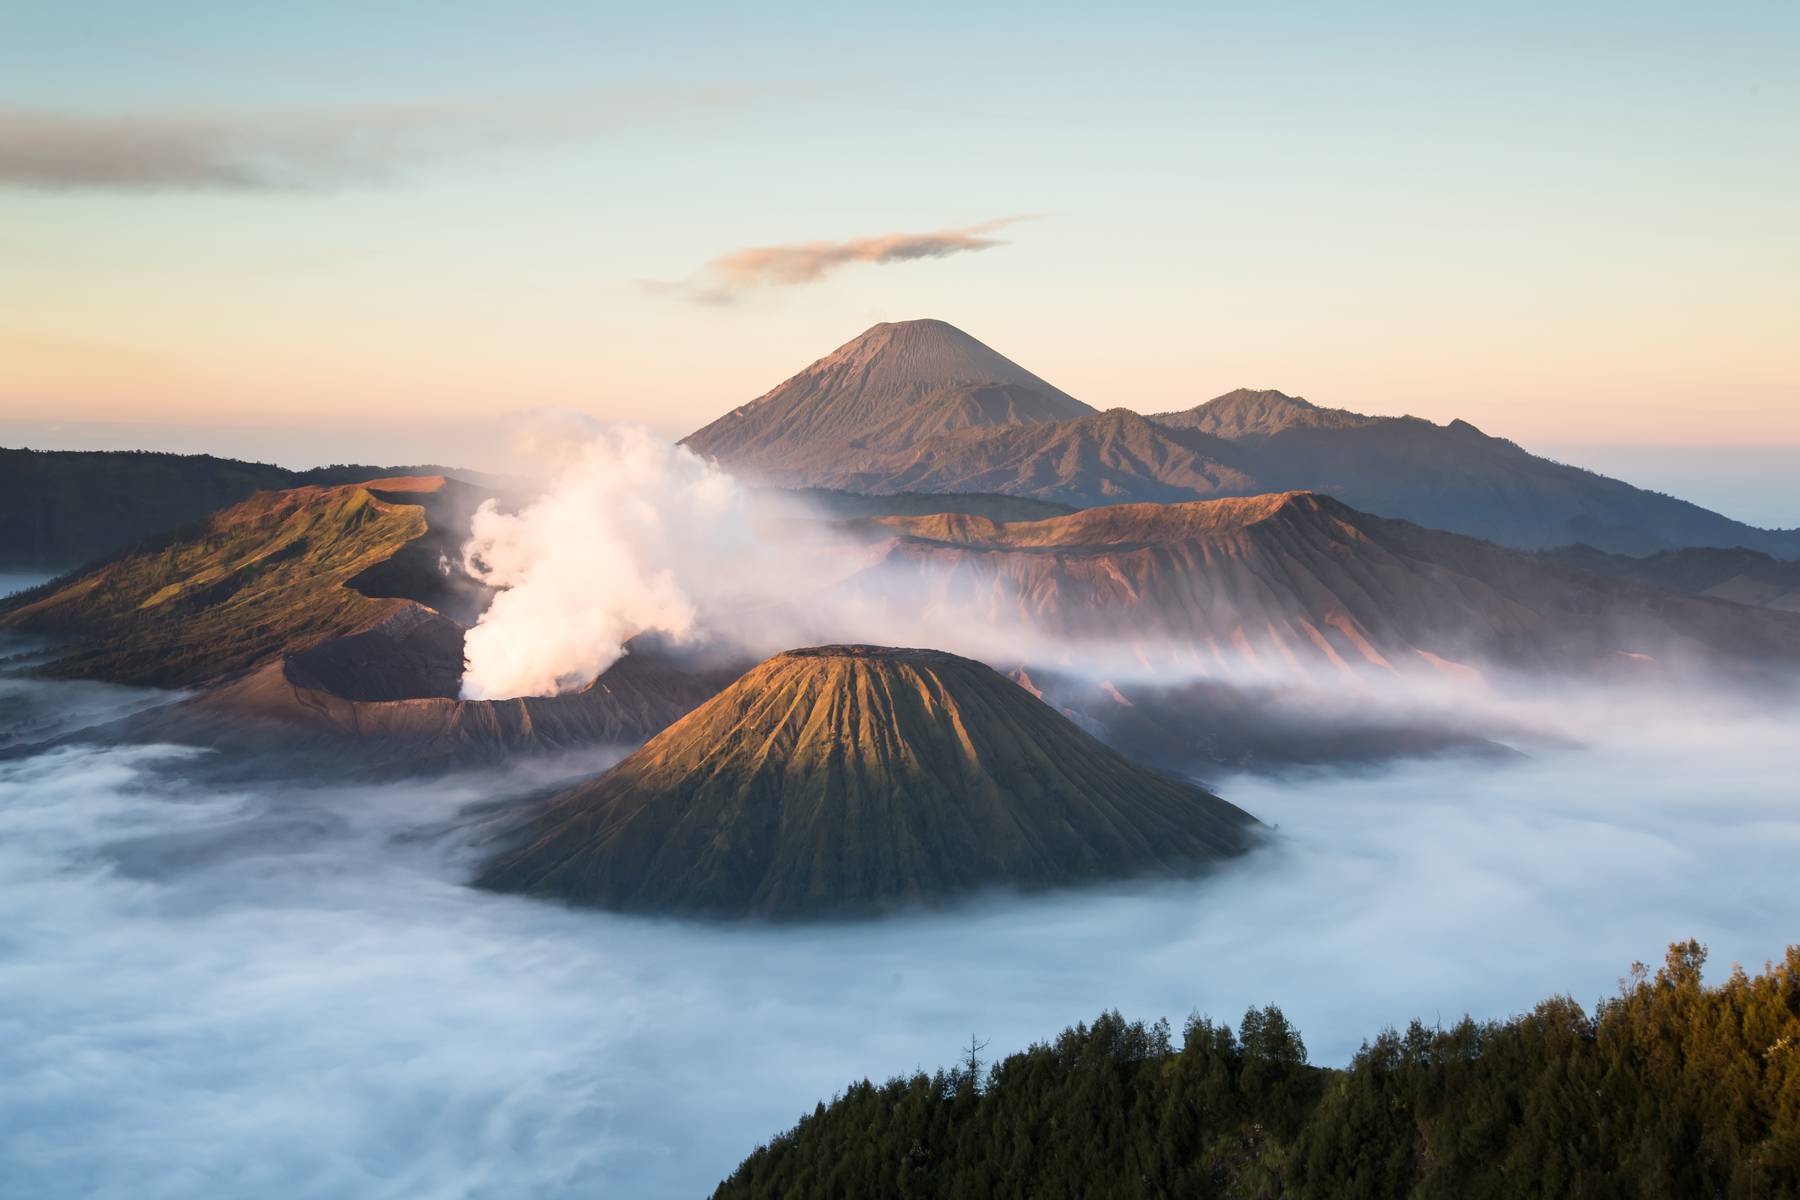 Besök och vandring vid vulkaner är en av resans höjdpunkter